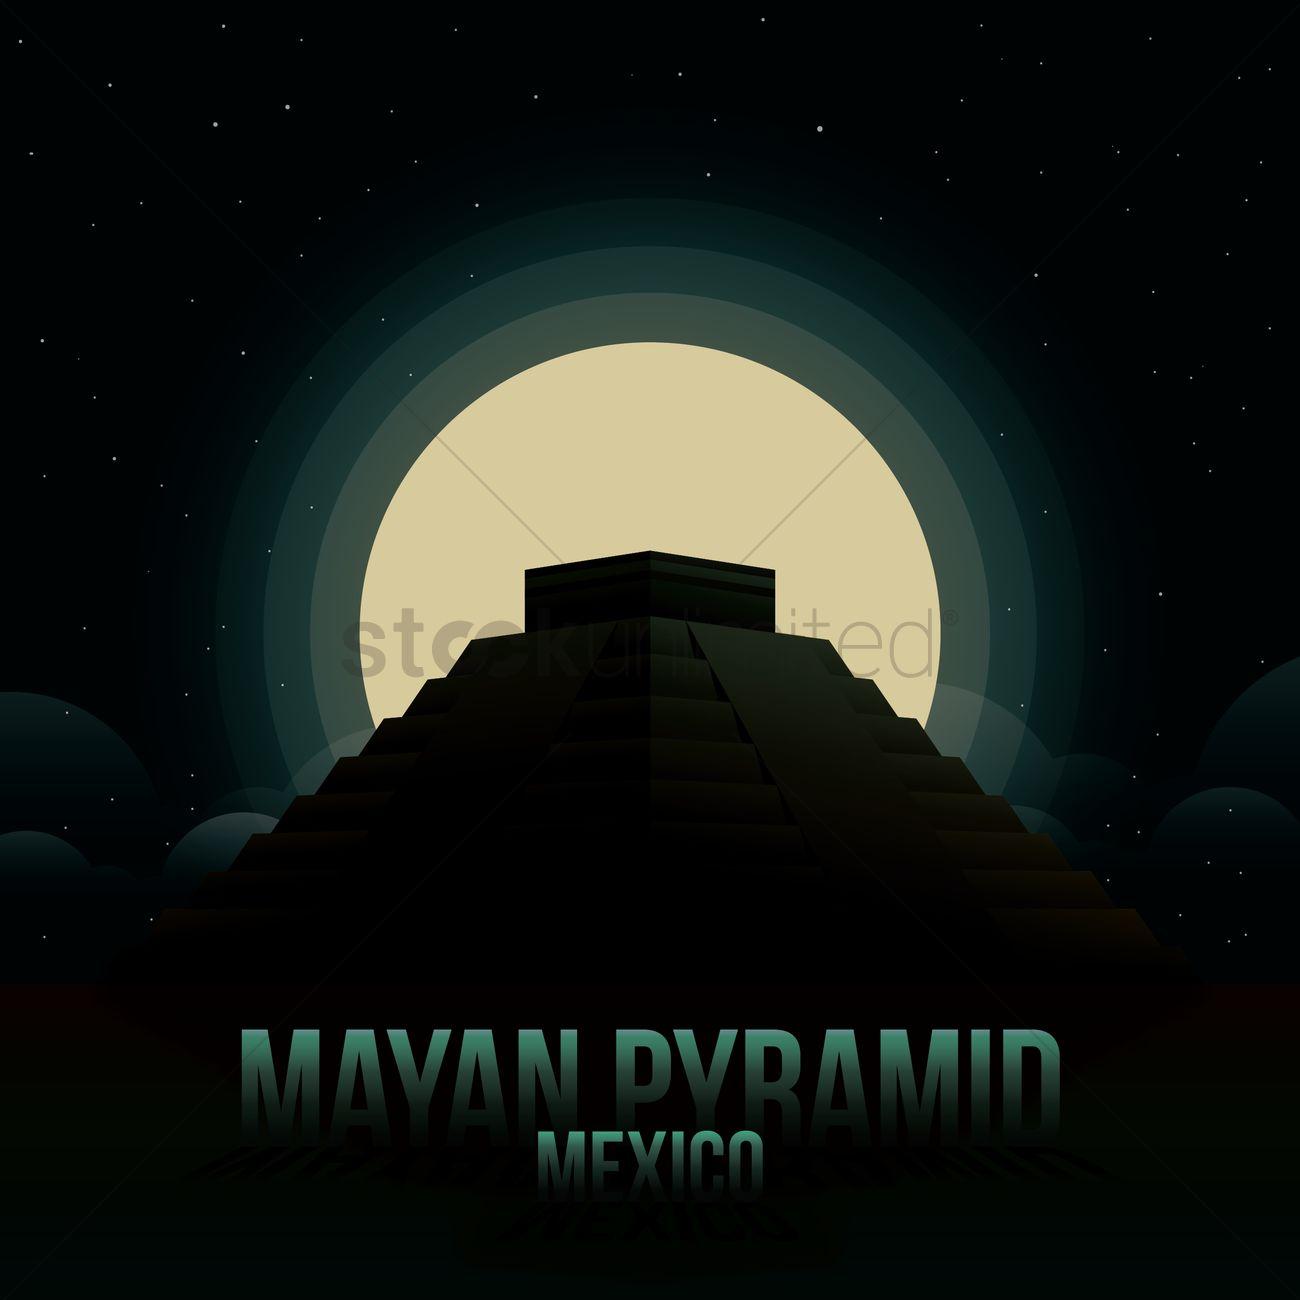 Mayan pyramid wallpaper Vector Image